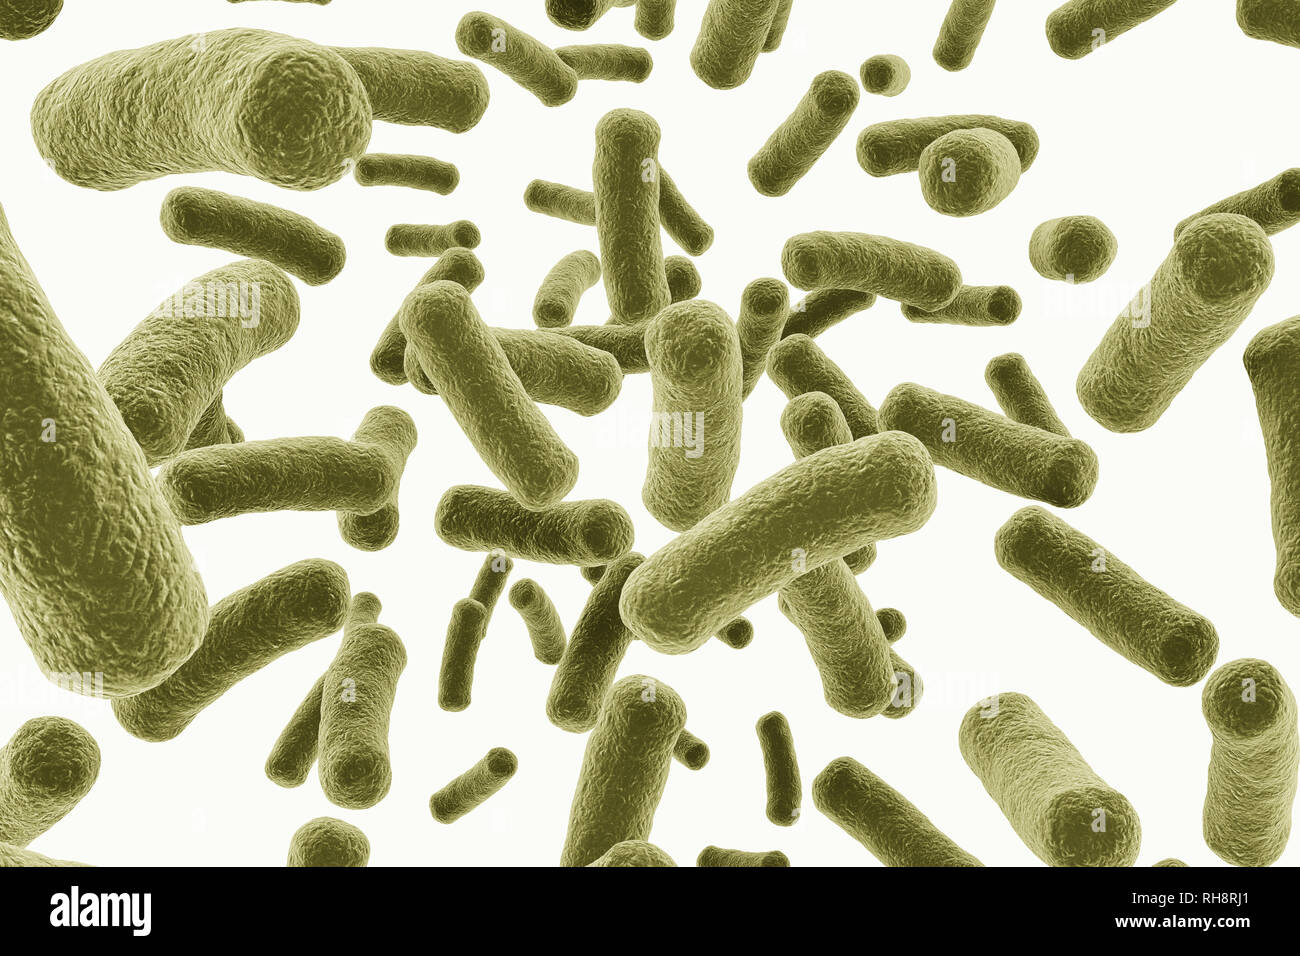 Virus cells close up image. Isolated on white background Stock Photo